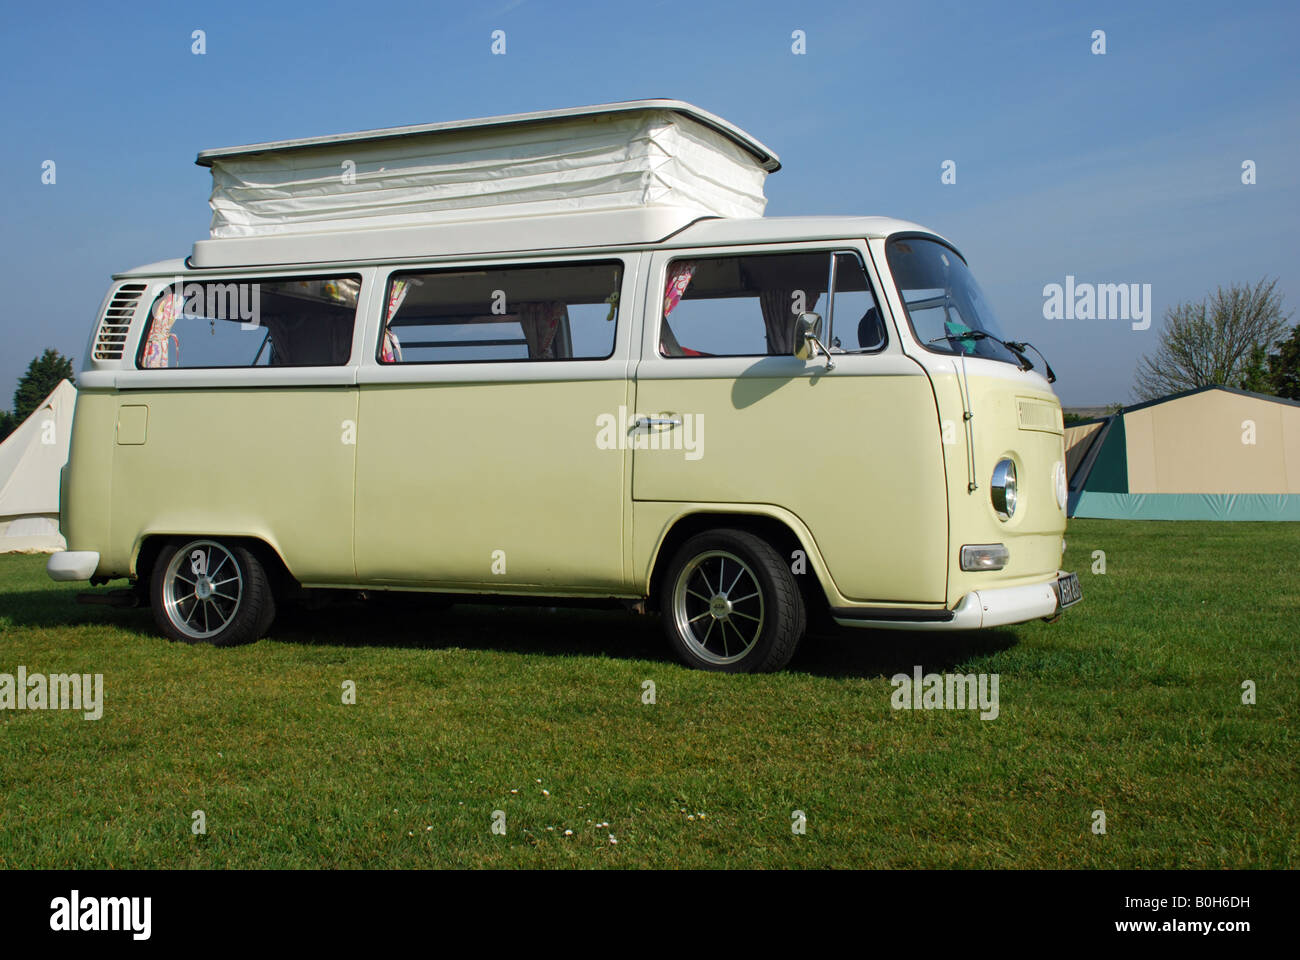 vw camper vans for sale in norfolk